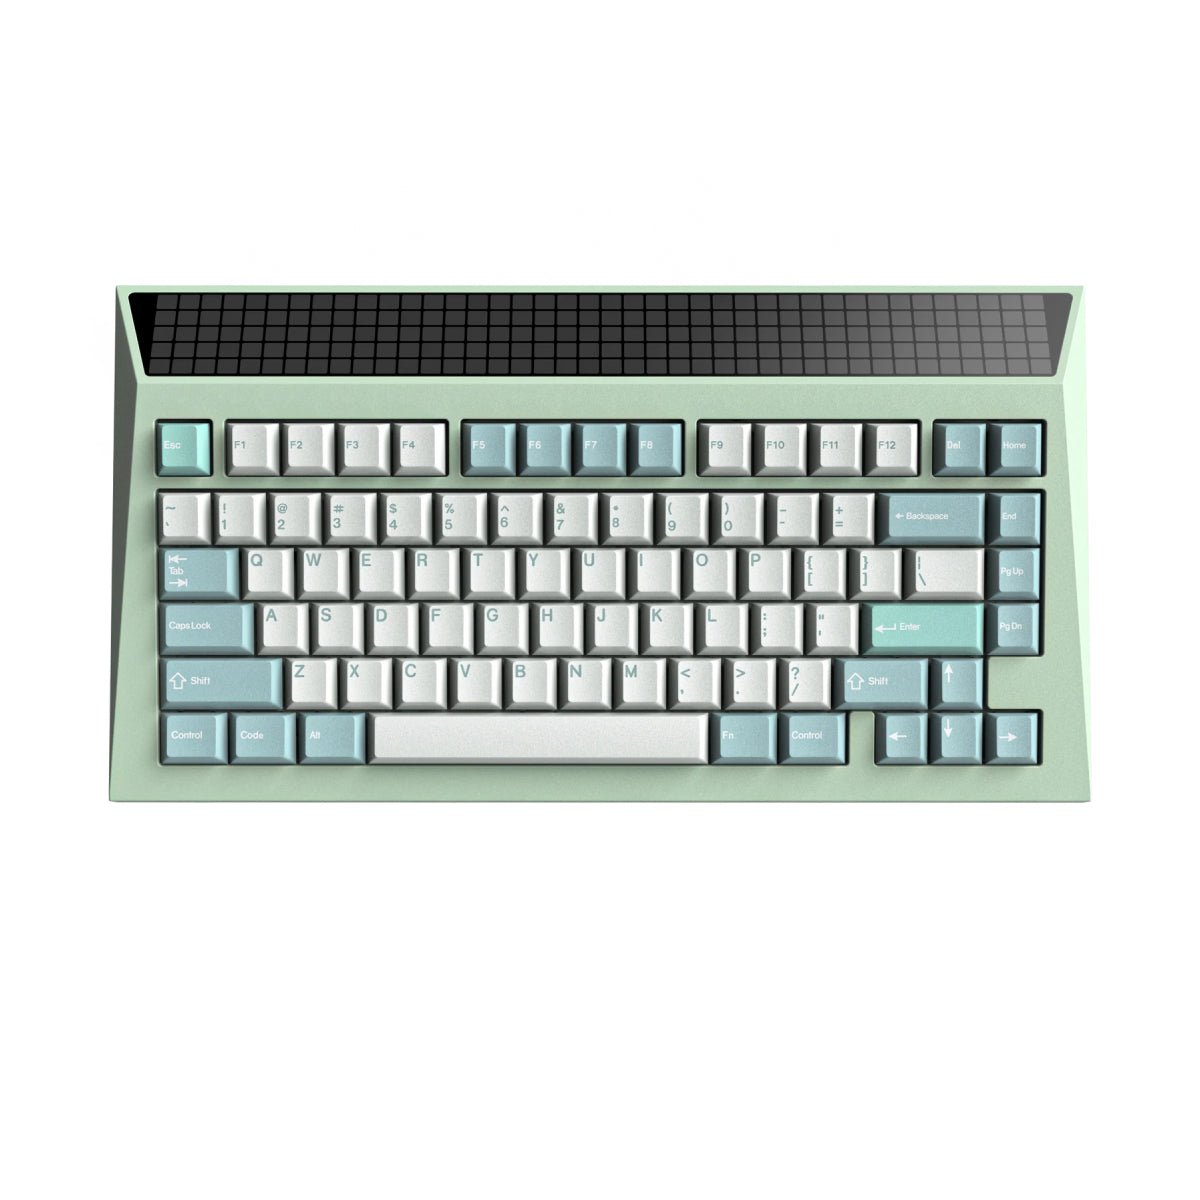 AngryMiao Cyberboard R3 Mechanical Keyboard - Aquatic Green - Store 974 | ستور ٩٧٤